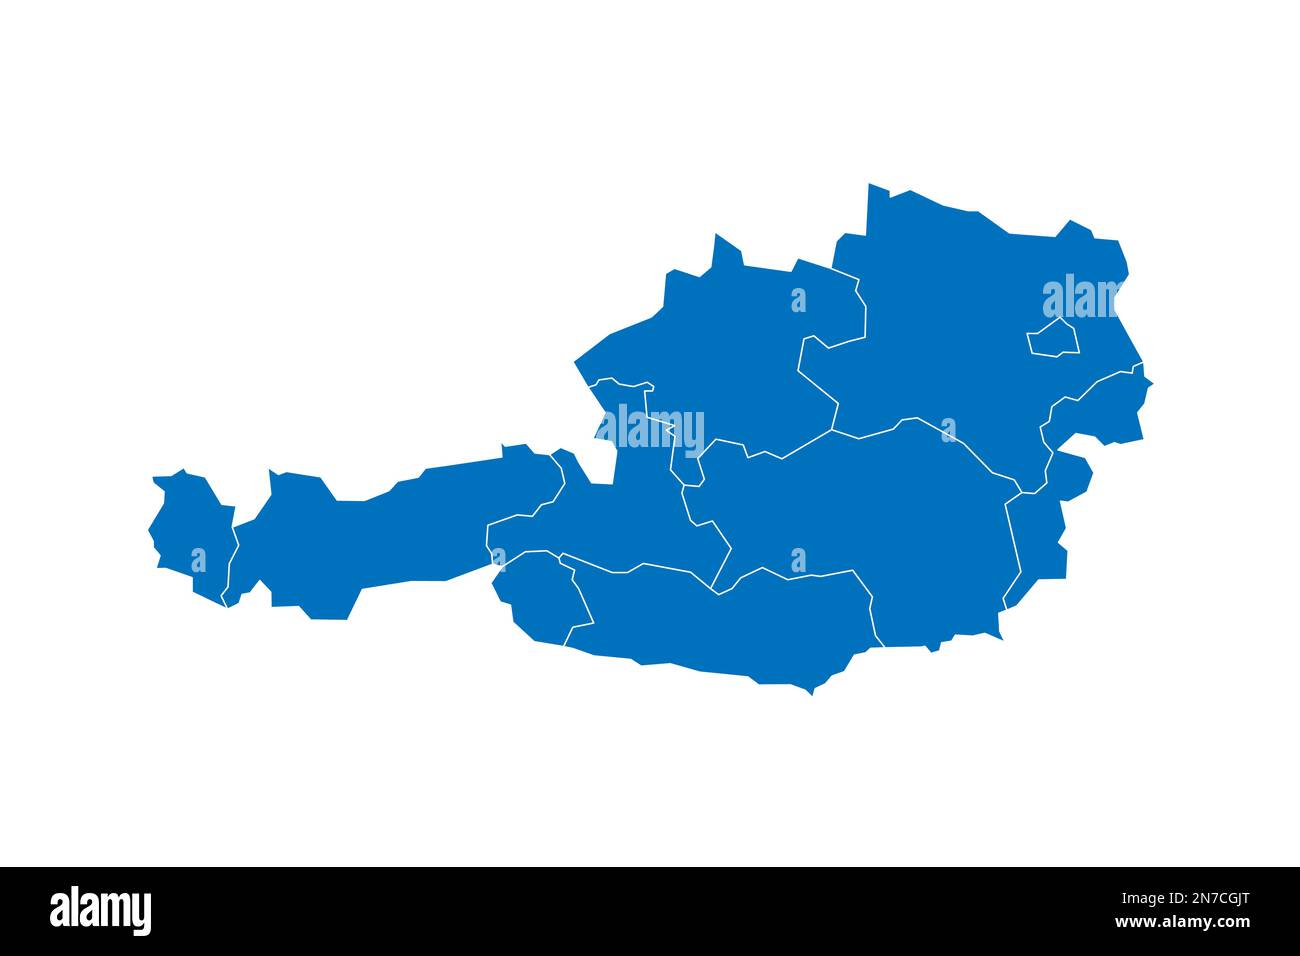 Osterreichische politische Karte der Verwaltungsabteilungen - Bundesländer. Blau leuchtende leere Vektorkarte mit weißen Rändern. Stock Vektor